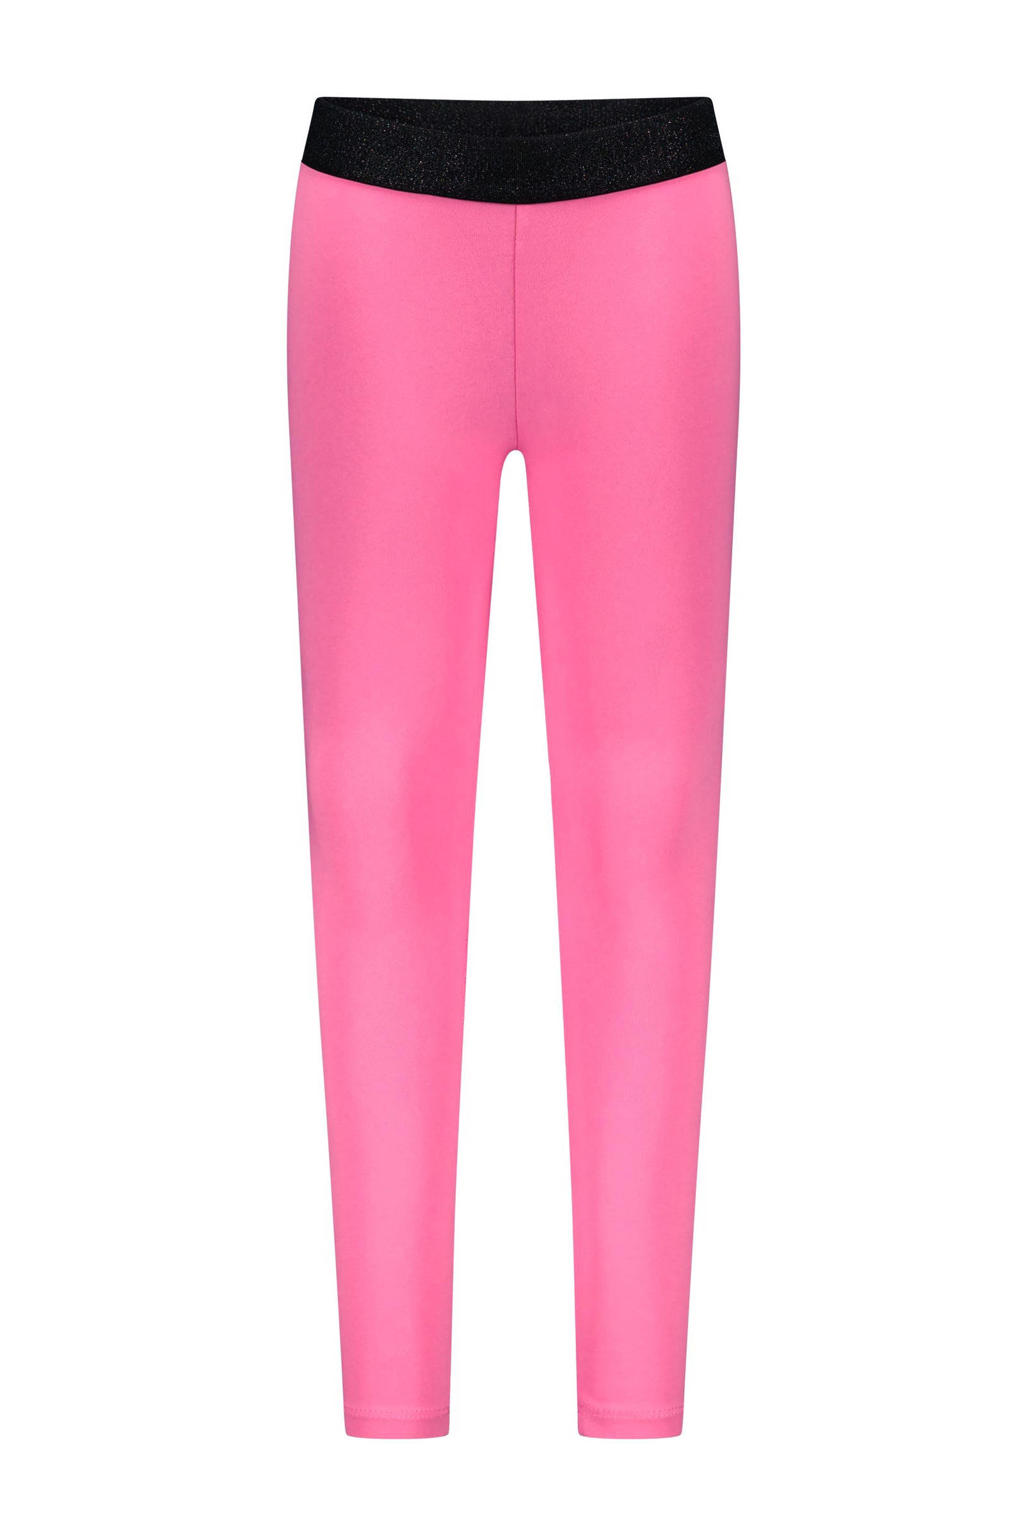 Roze meisjes B.Nosy legging van stretchkatoen met elastische tailleband